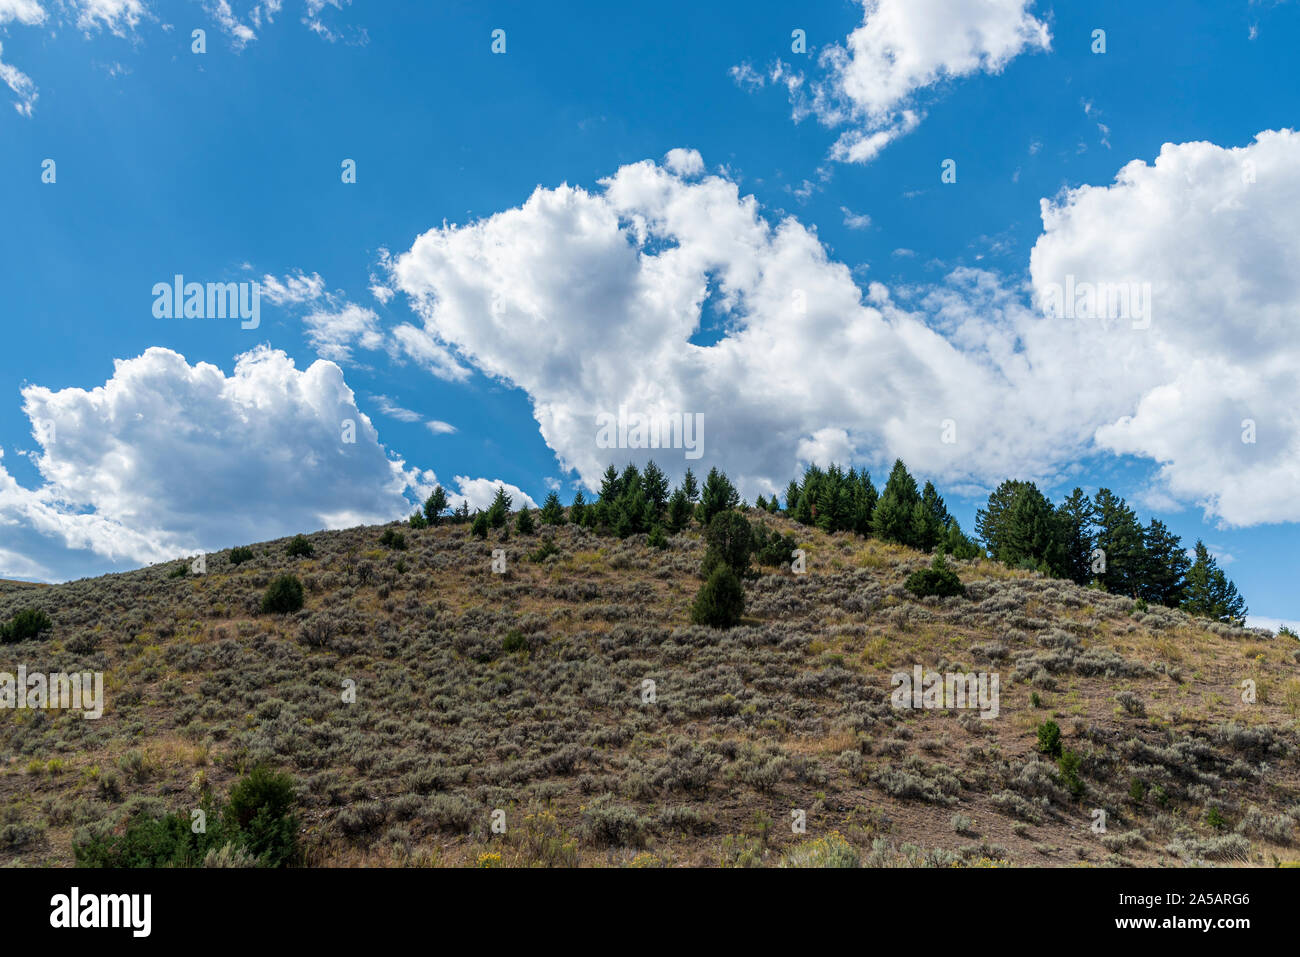 Hügel bedeckt im Sagebrush und Bäume unter strahlend blauen Himmel mit großen flauschigen weissen Wolken. Stockfoto